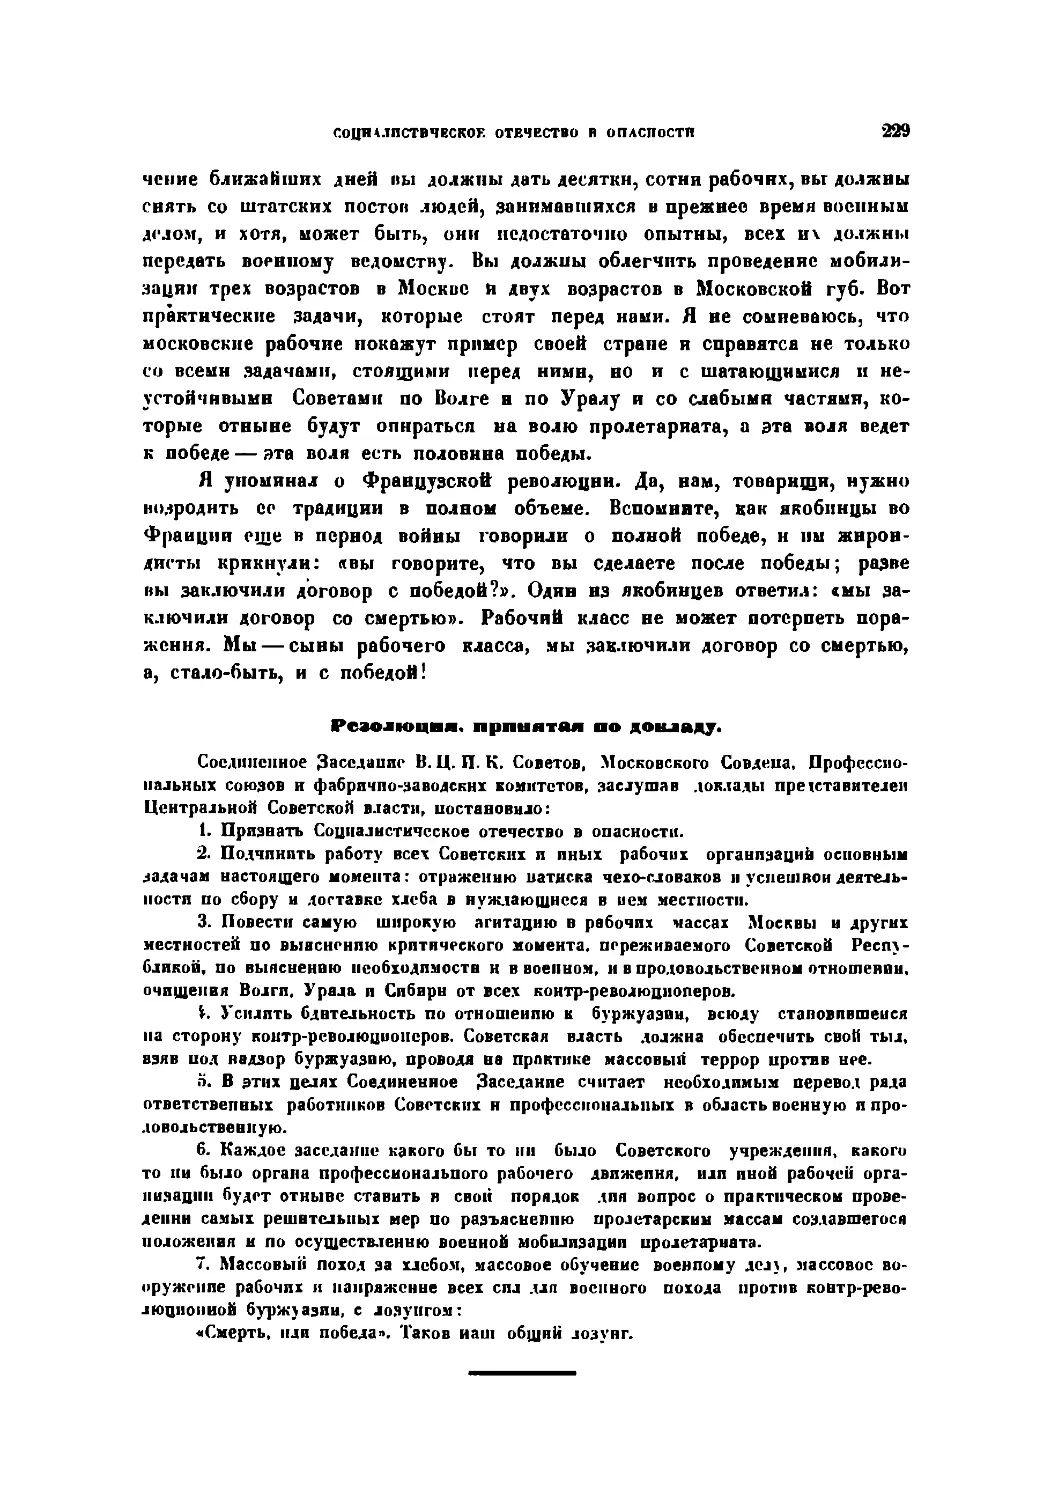 Резолюция, принятая по докладу в заседании 29 июля 1918 г.